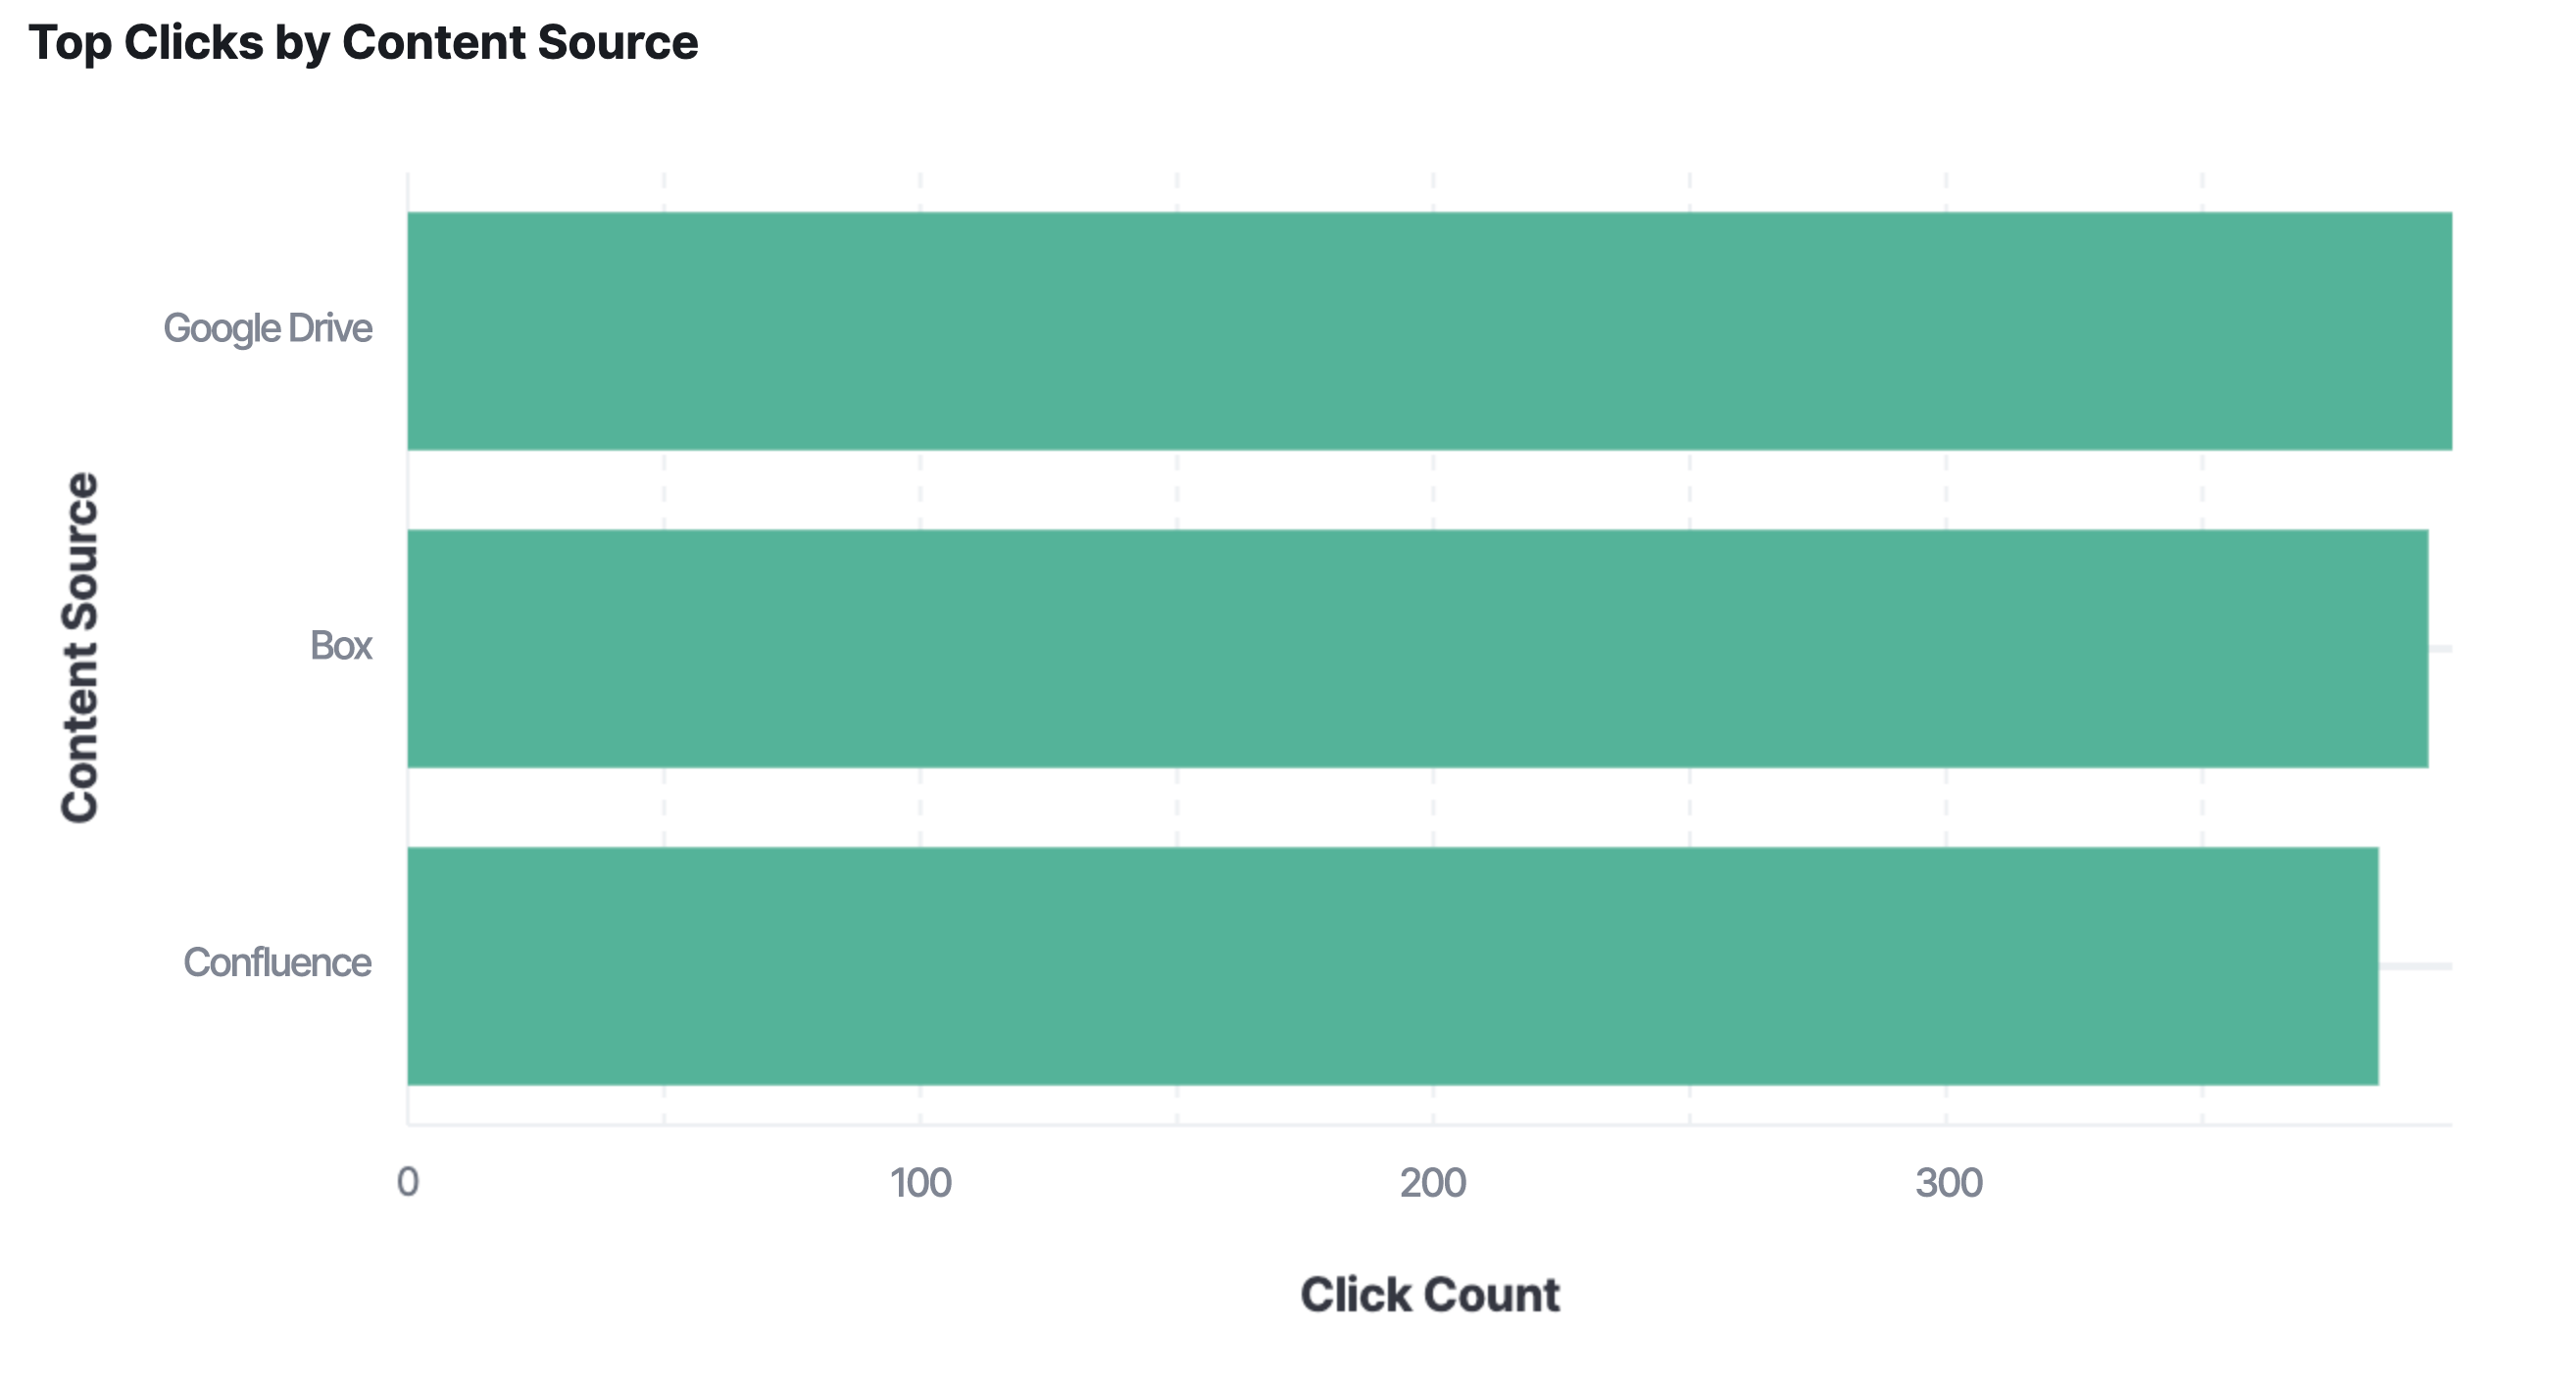 Analyse Elastic Workplace Search : nombre de clics le plus élevé par source de contenu